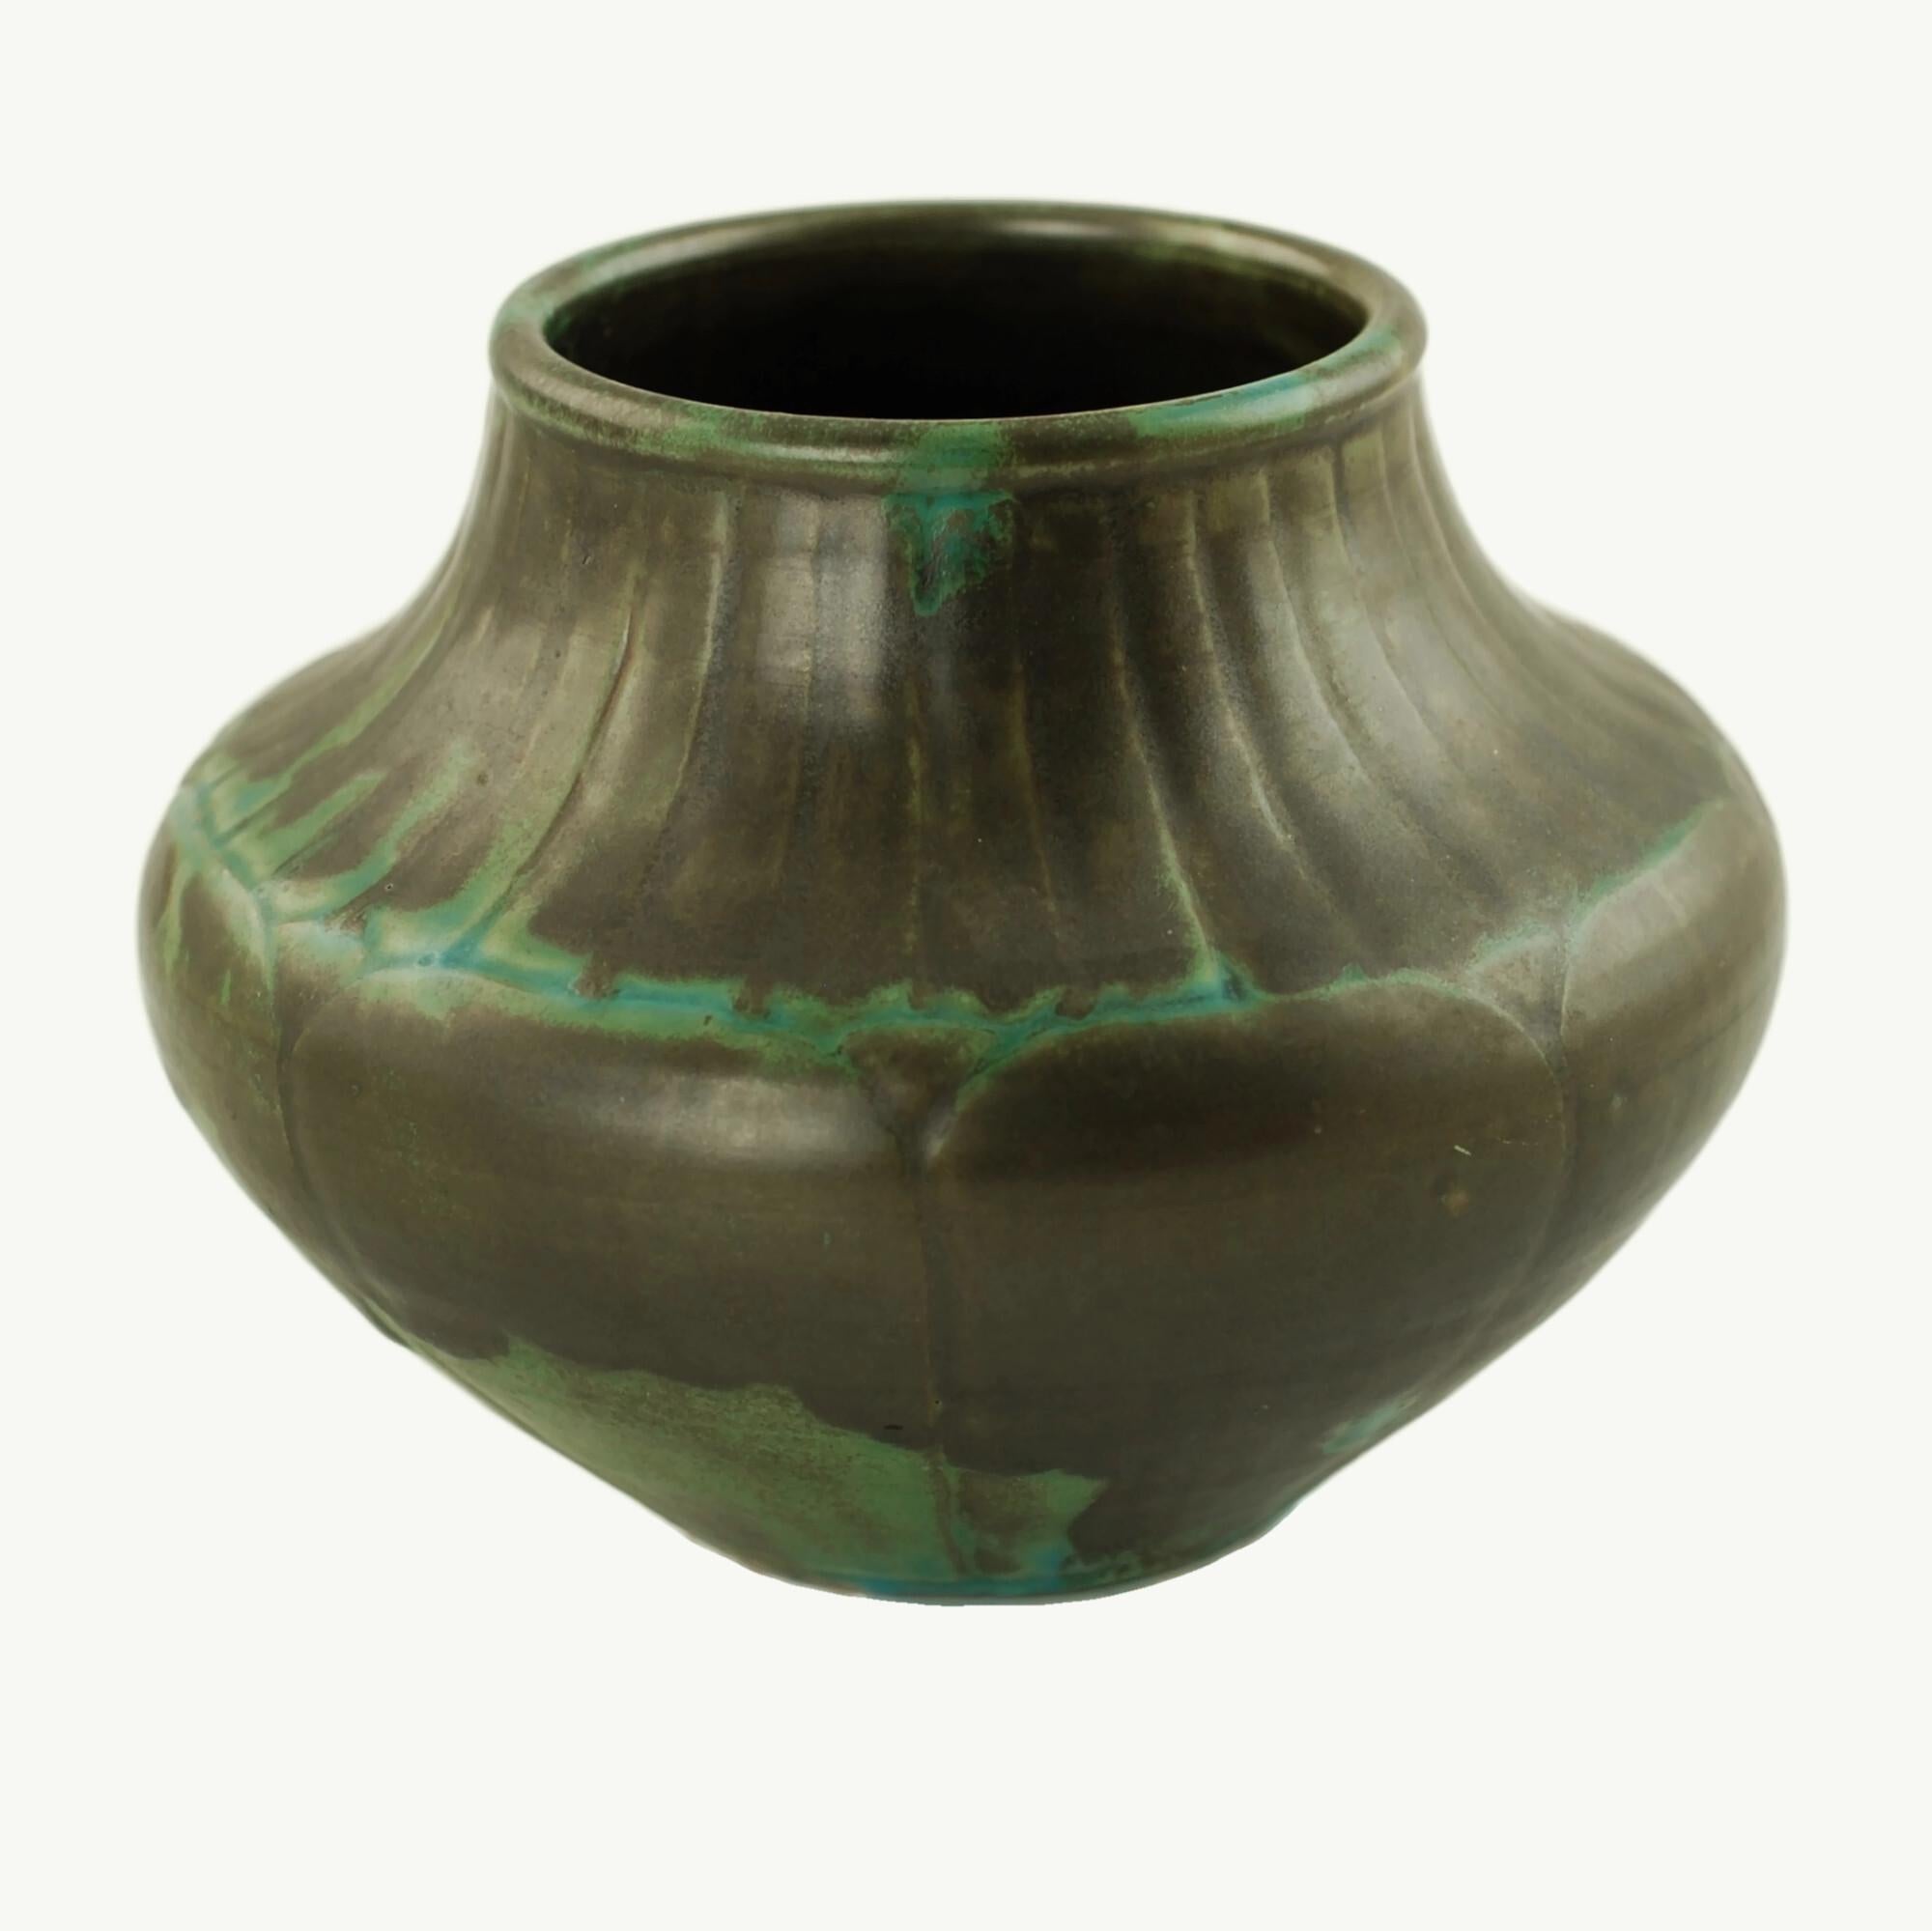 Ce magnifique vase a été fabriqué par la célèbre société Shearwater Pottery d'Ocean Springs, dans le Mississippi. Shearwater a été fondé en 1928 par Peters Anderson et s'est ensuite forgé une réputation de créateur de poteries d'art innovantes et